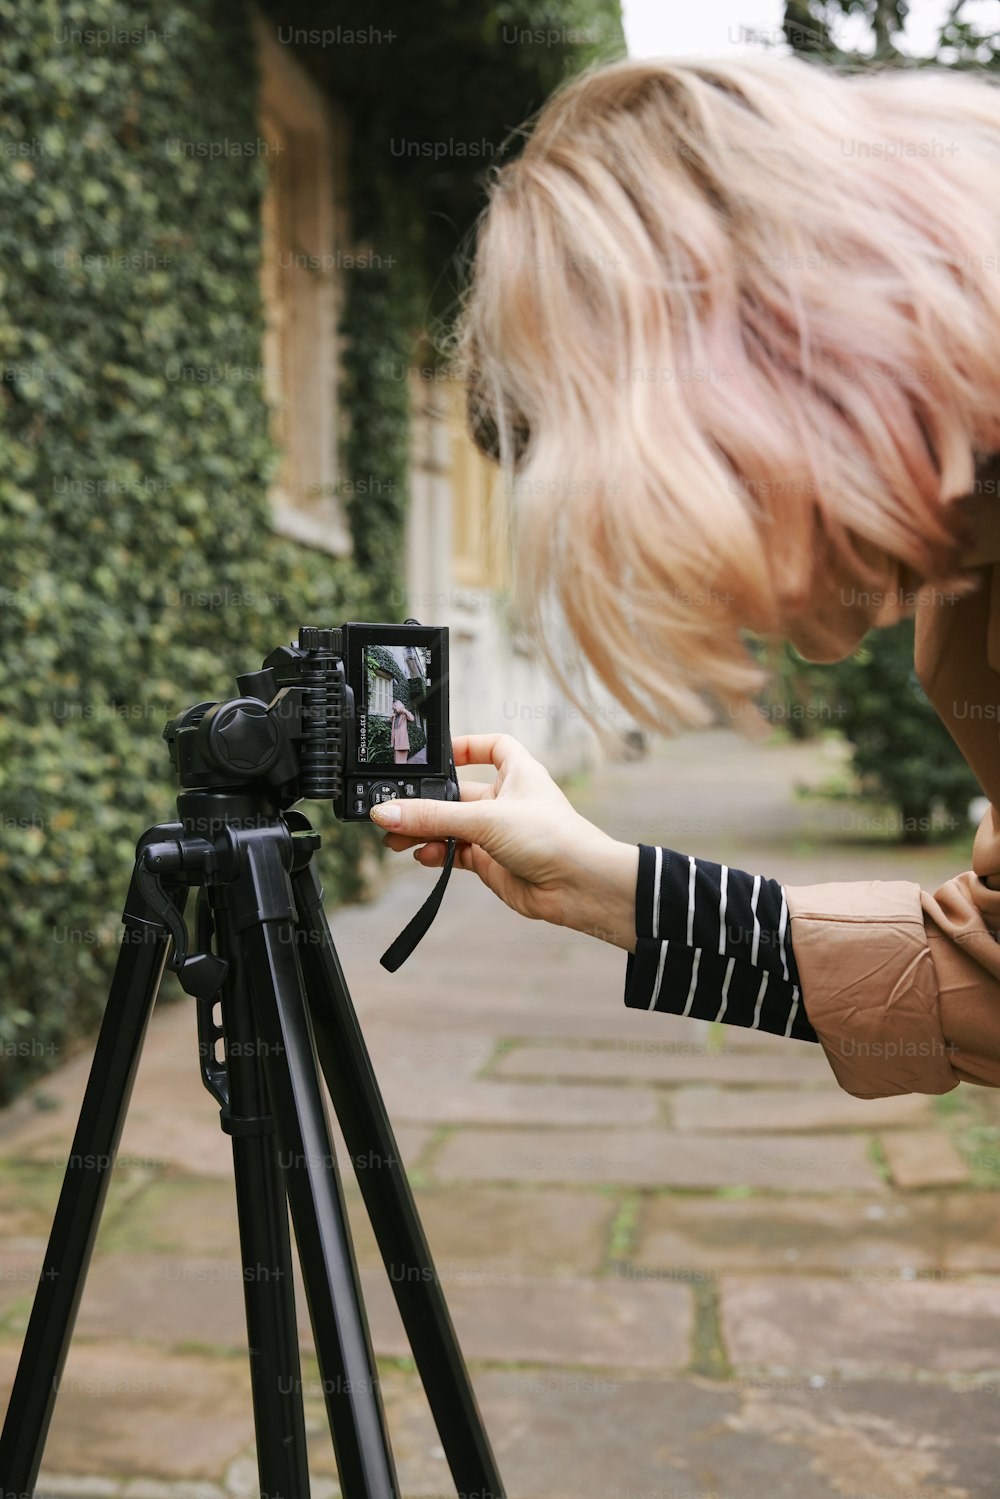 una donna che scatta una foto con una macchina fotografica su un treppiede